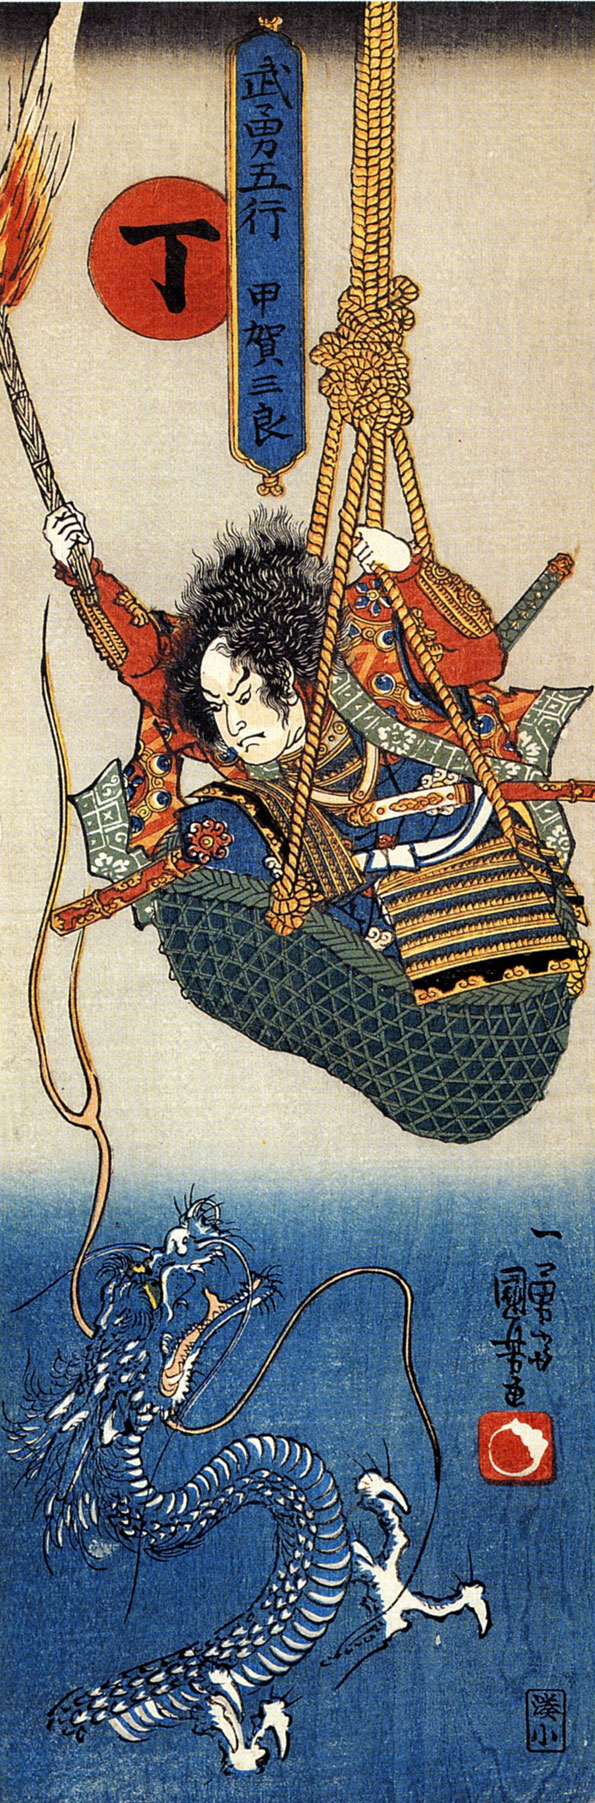 Hinoto Koga Saburo suspendedin a basket watching a dragon.  Kuniyoshi Utagava